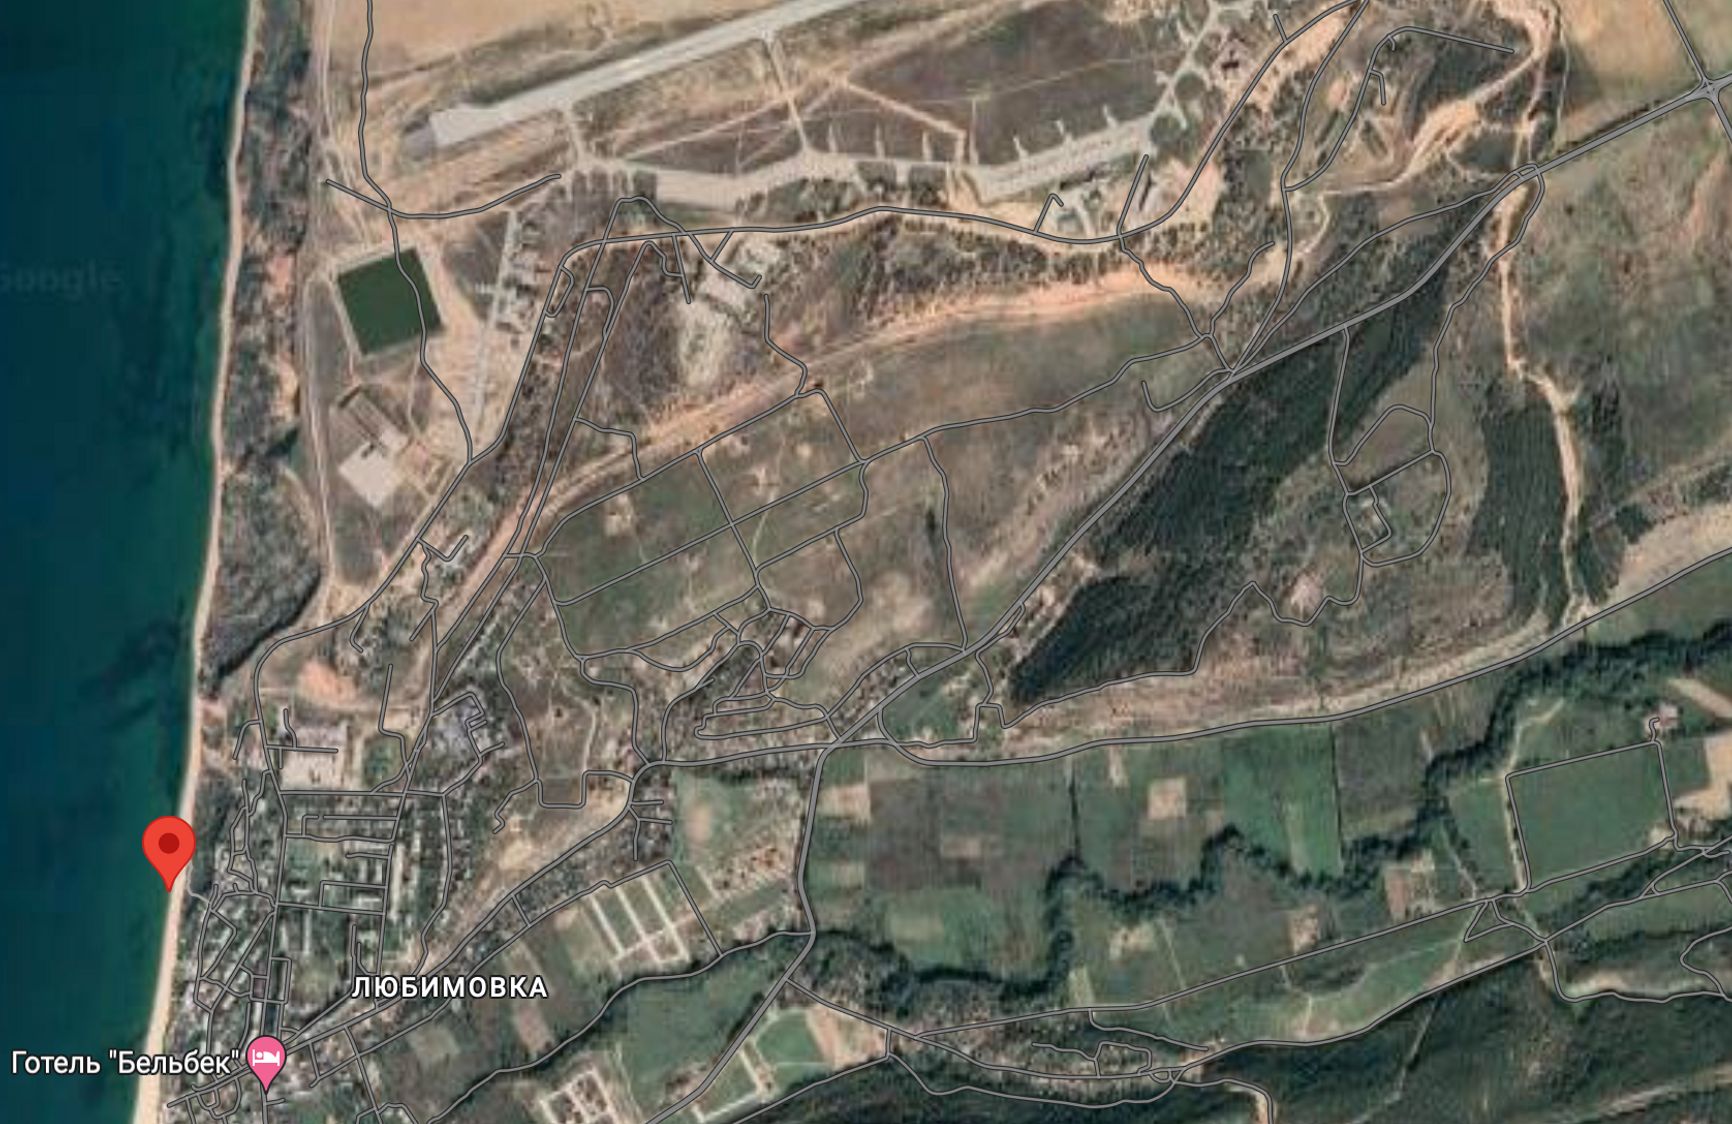 В Севастополе на военном аэродроме «Бельбек» произошел взрыв. Местные власти говорят, что загорелся самолет